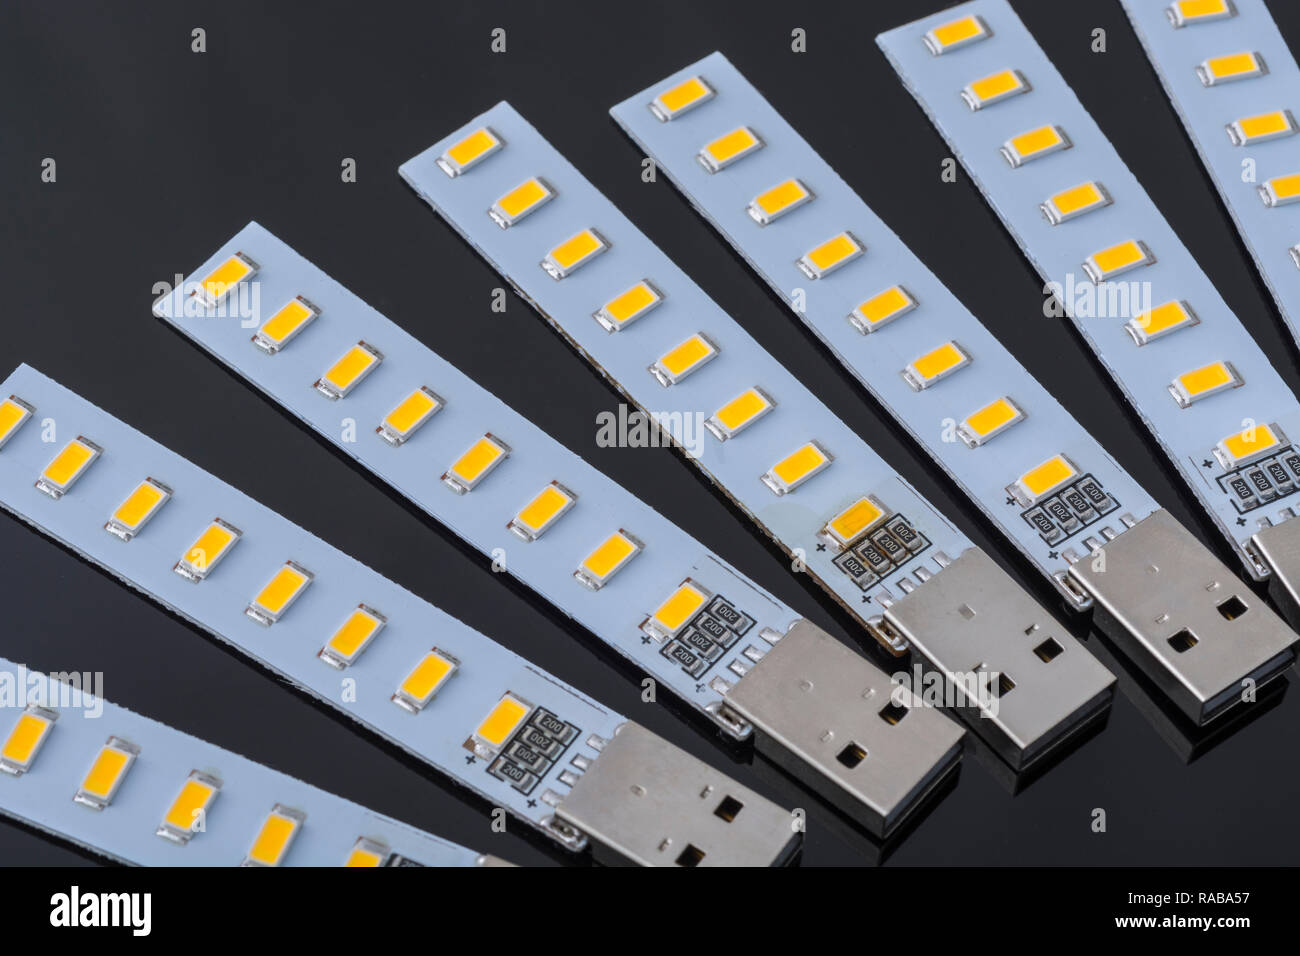 Makro Foto von den billigen chinesischen USB-betriebene LED-Leuchten -  Energieeffiziente Beleuchtung für Camping, Laptop, Licht, etc  Stockfotografie - Alamy